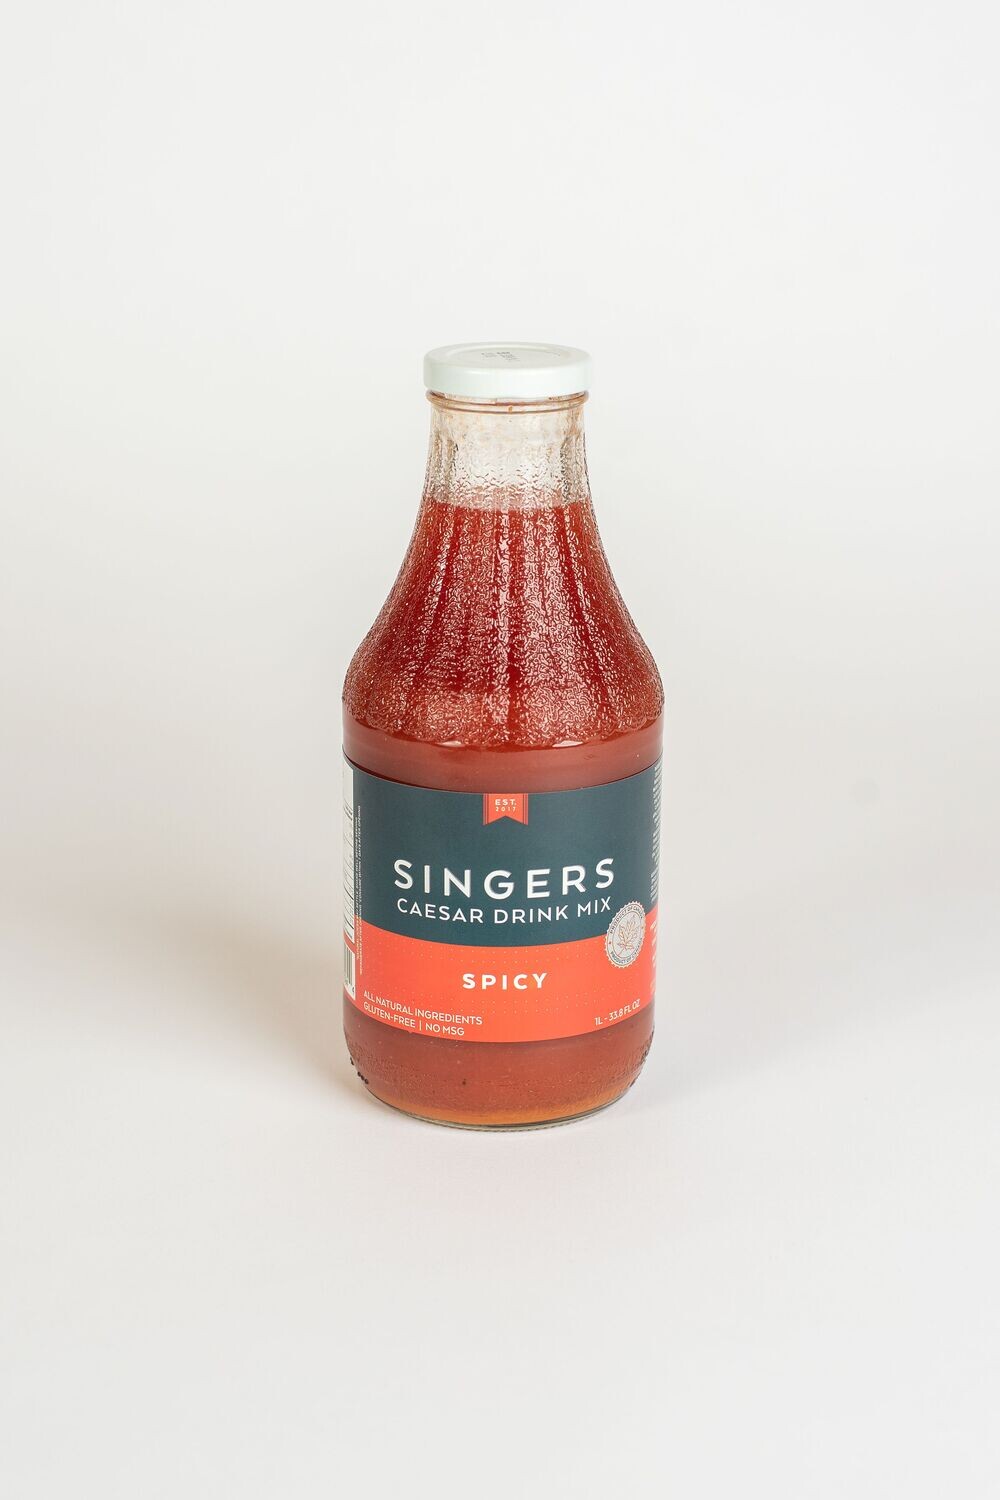 SINGERS Spicy Caesar Drink Mix – 1L Bottle